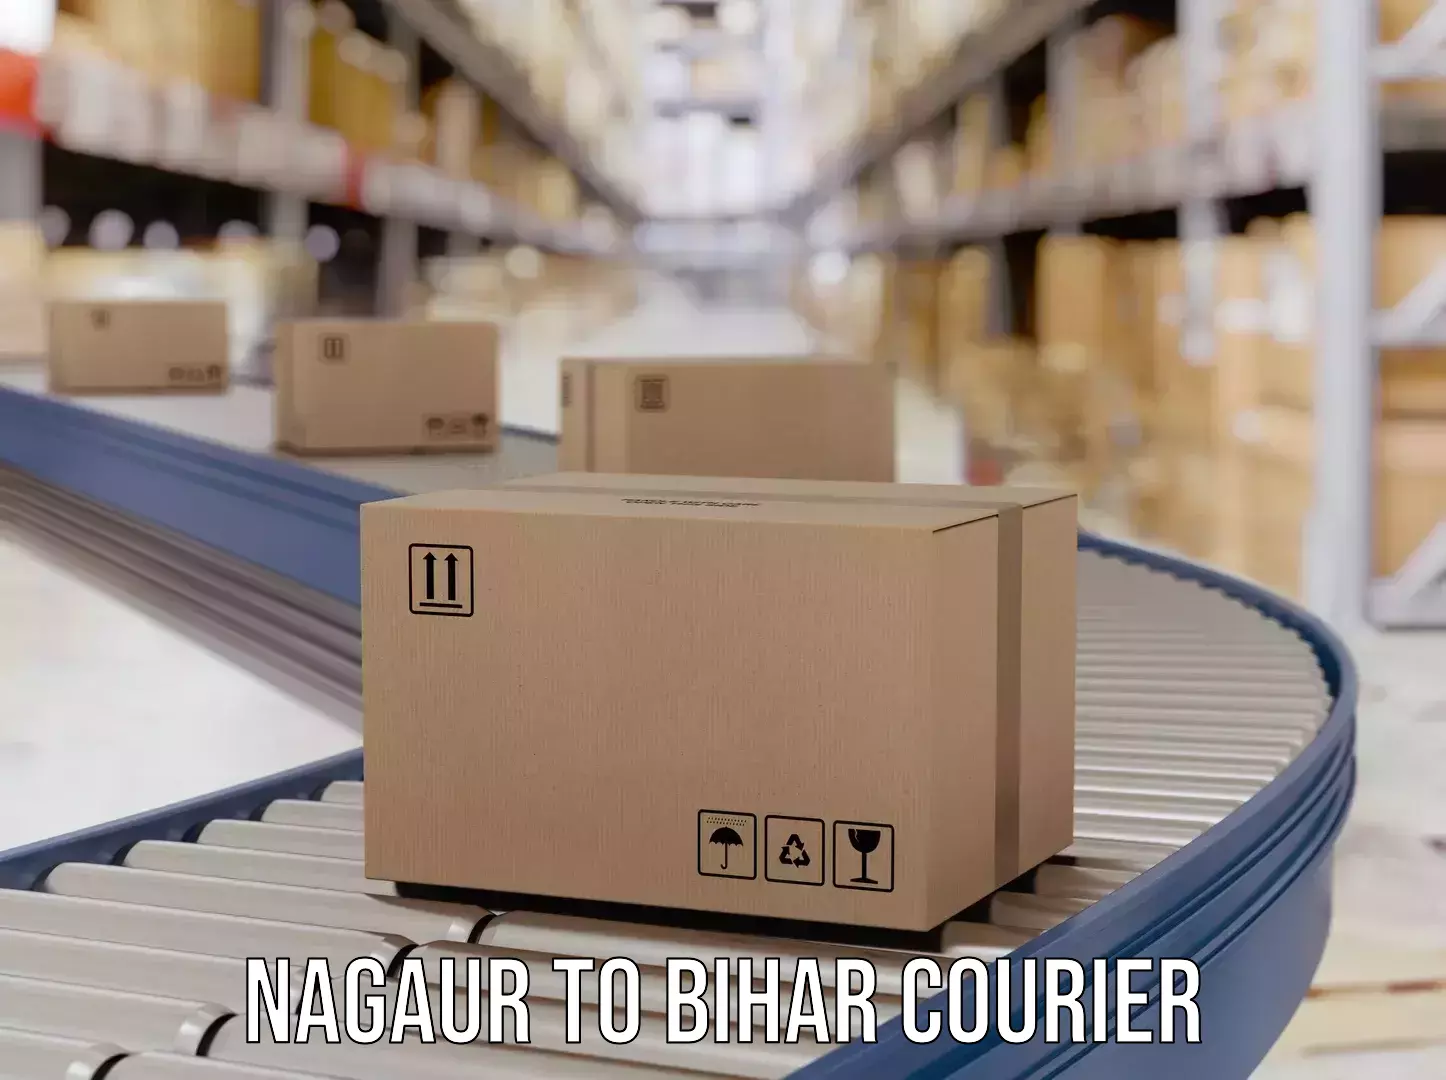 Cash on delivery service Nagaur to Arrah